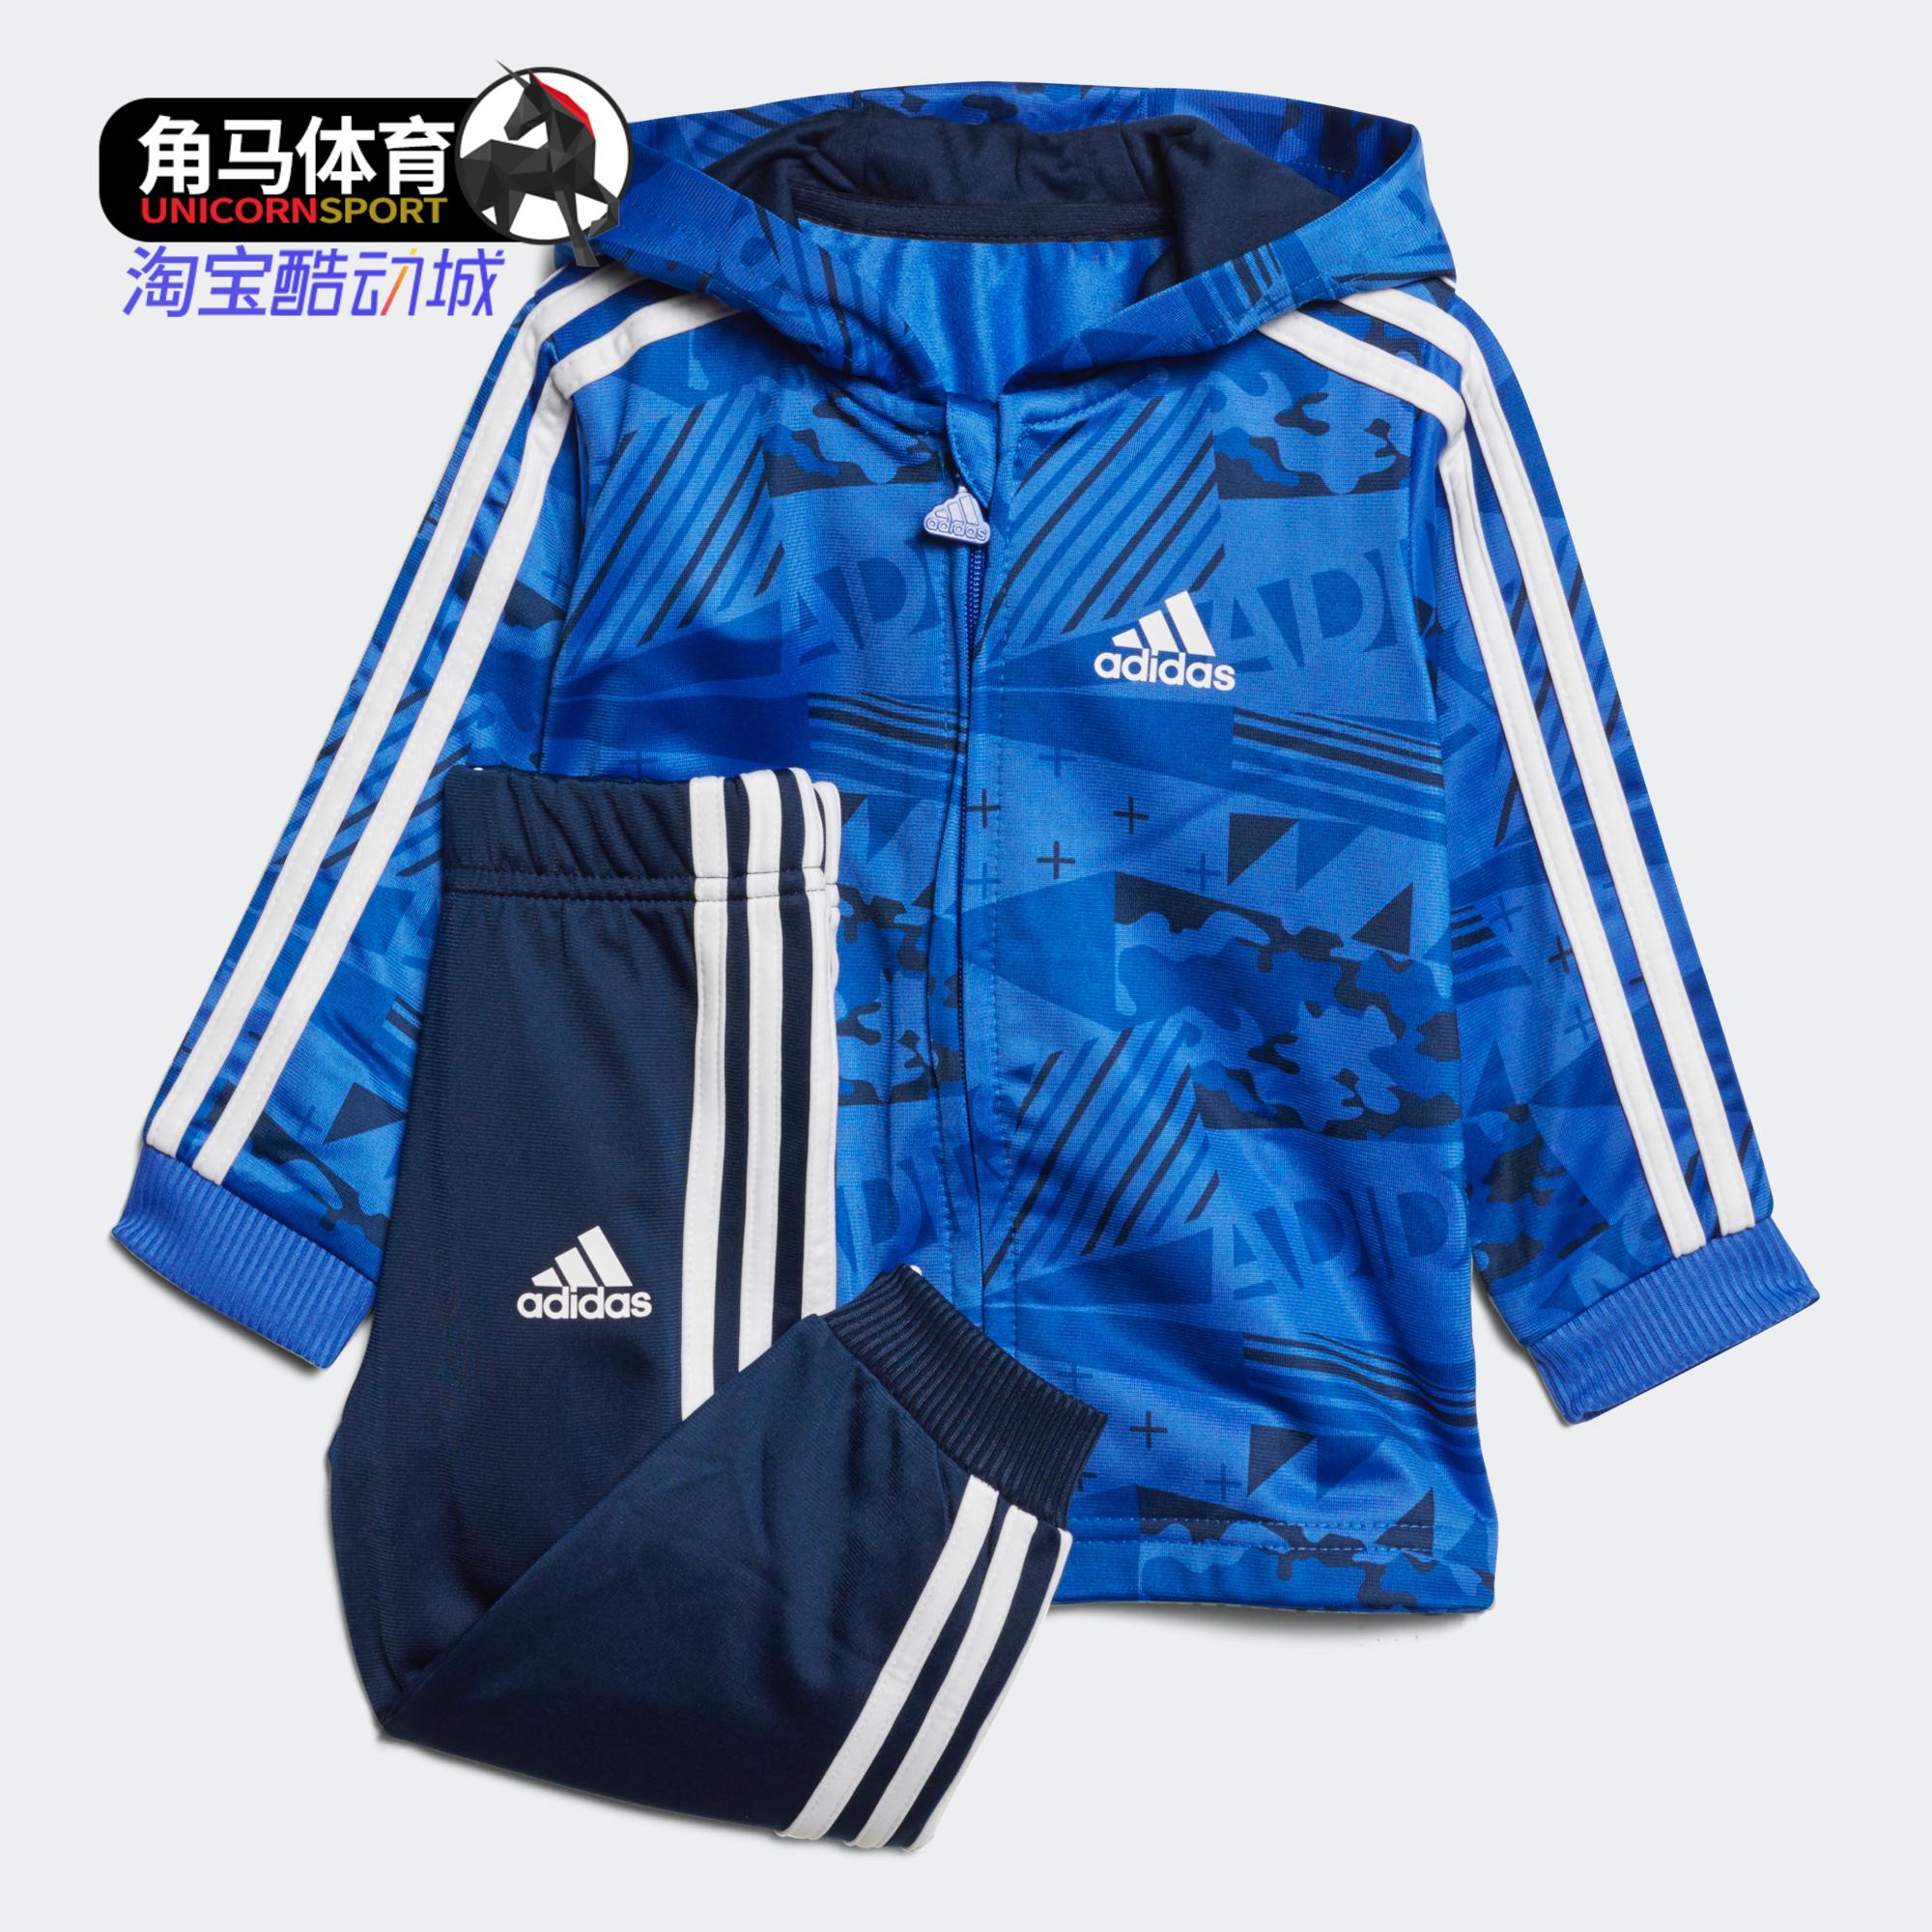 Adidas/阿迪达斯正品男女小童运动休闲长袖套装 CF7394-封面